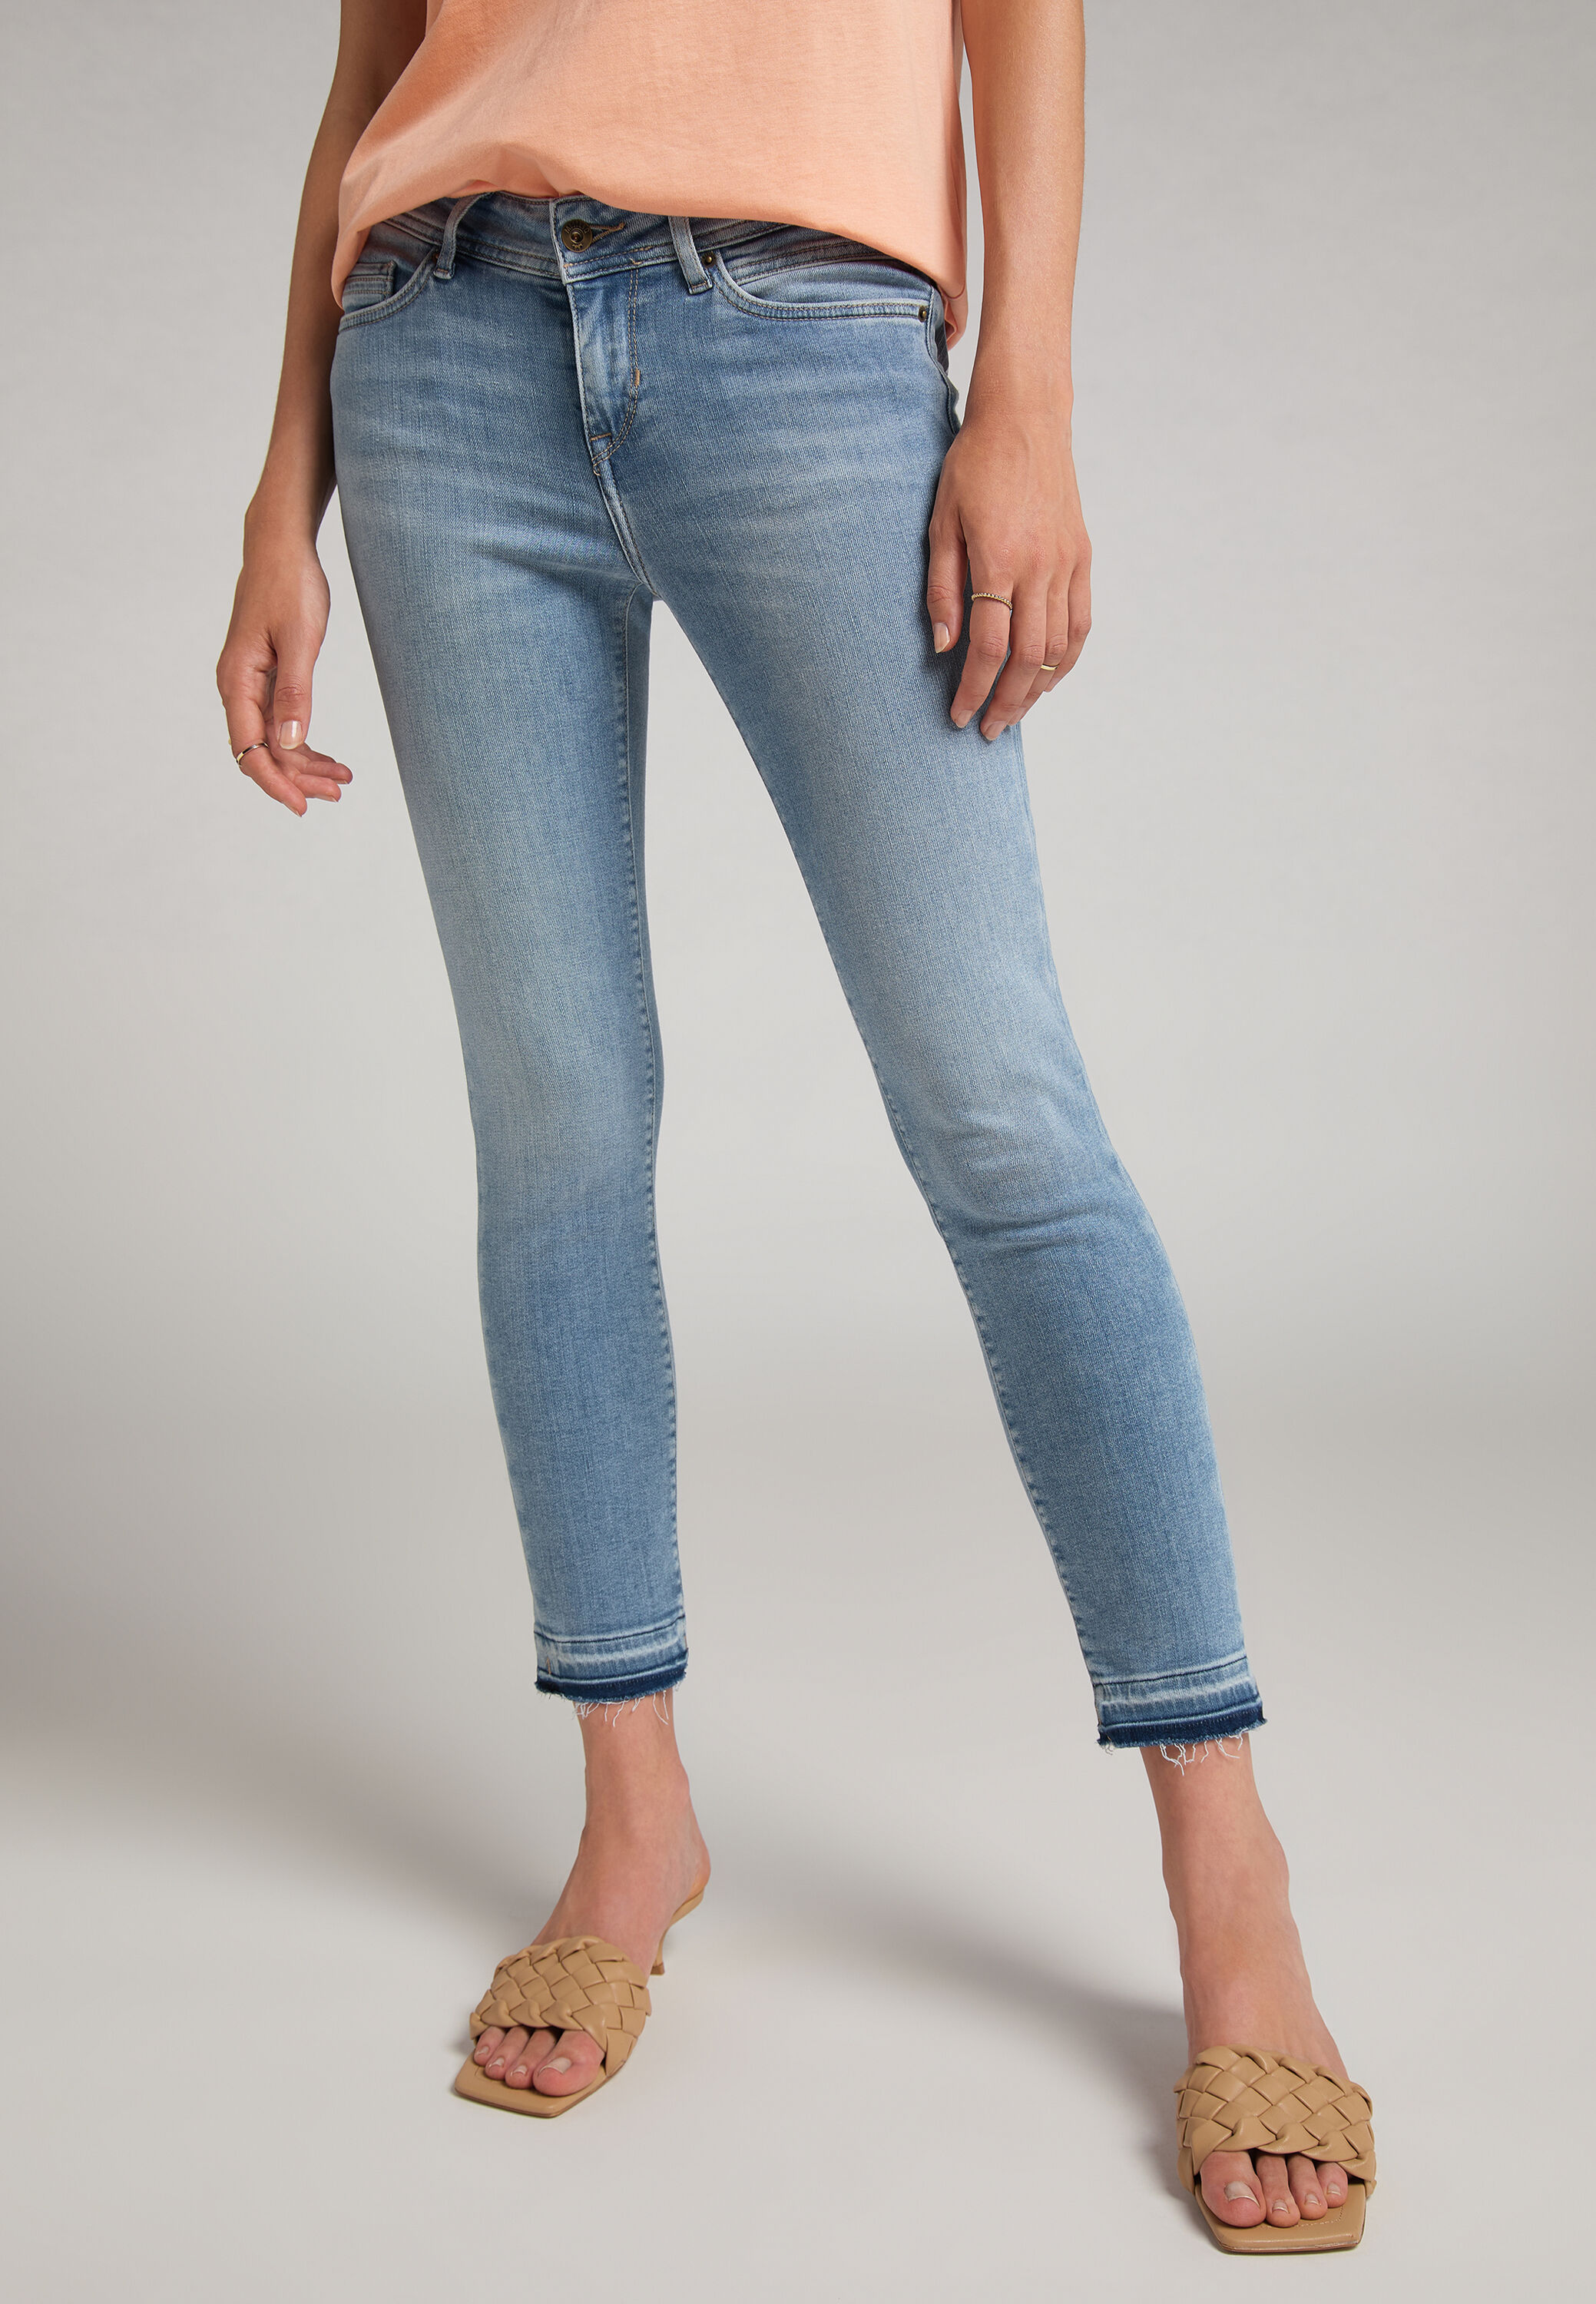 MUSTANG Damen Slim Fit Jasmin 7/8 Jeans